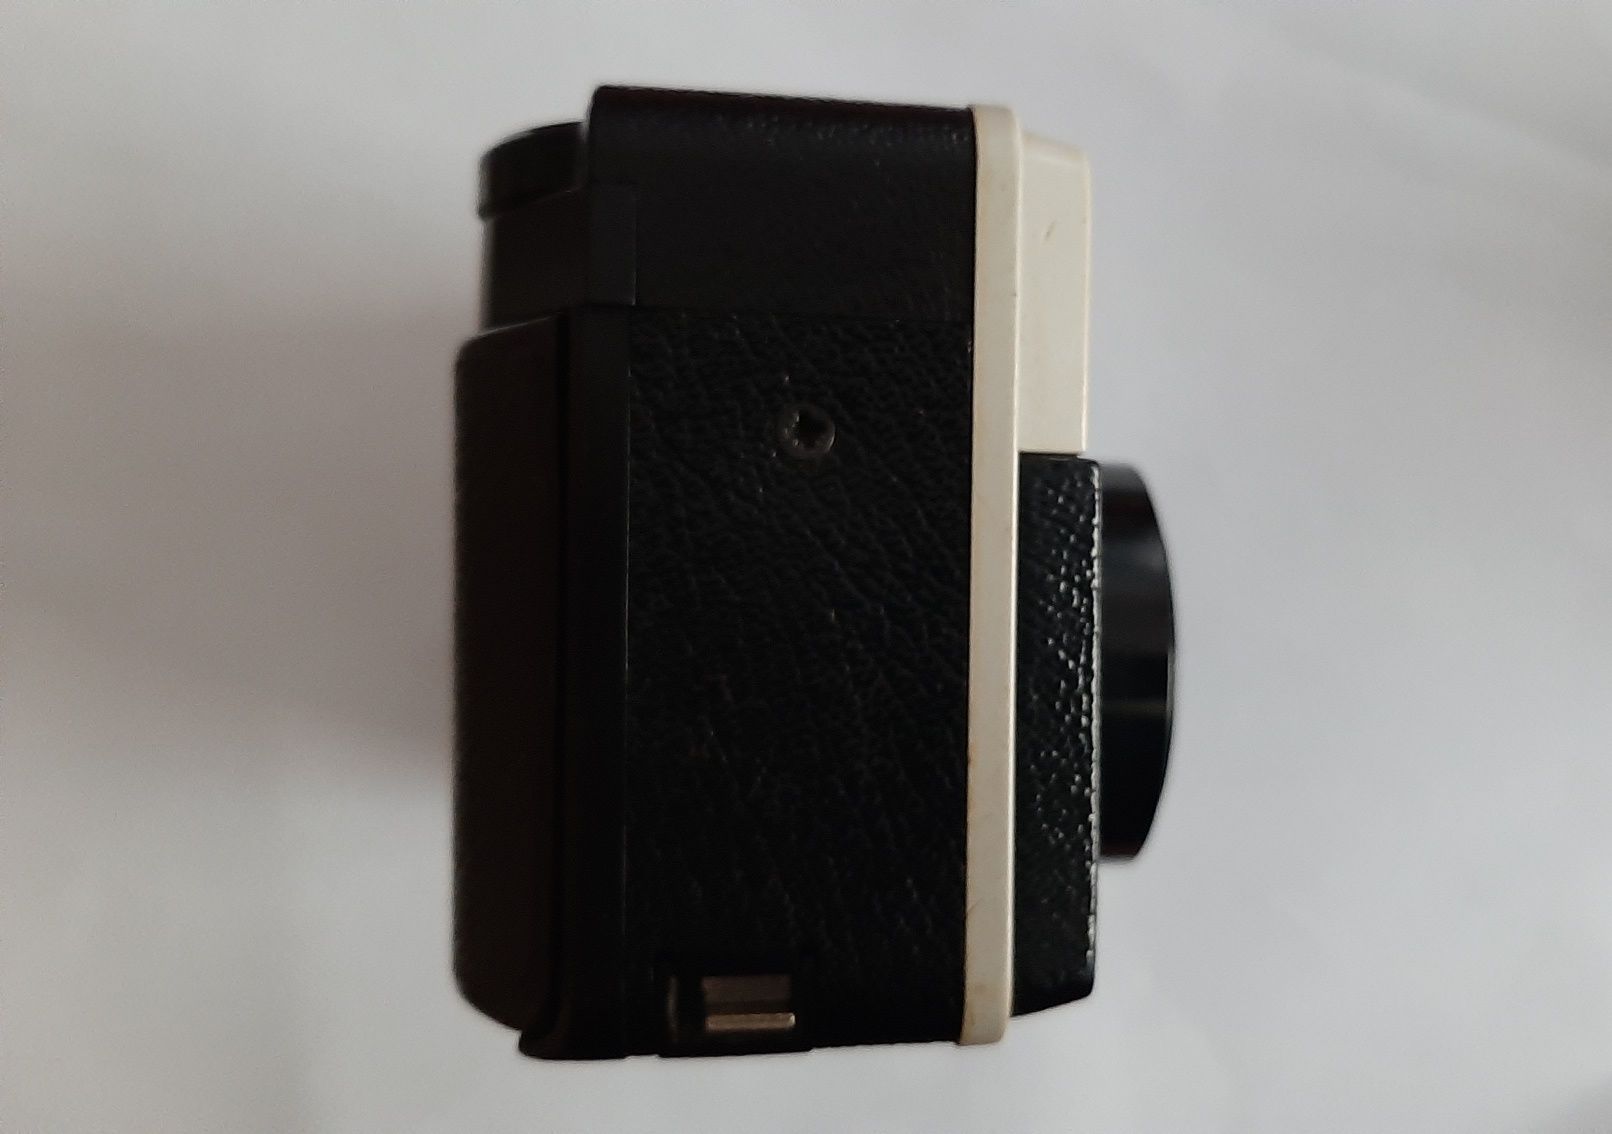 Aparat analogowy Kodak insomatic 56 X.